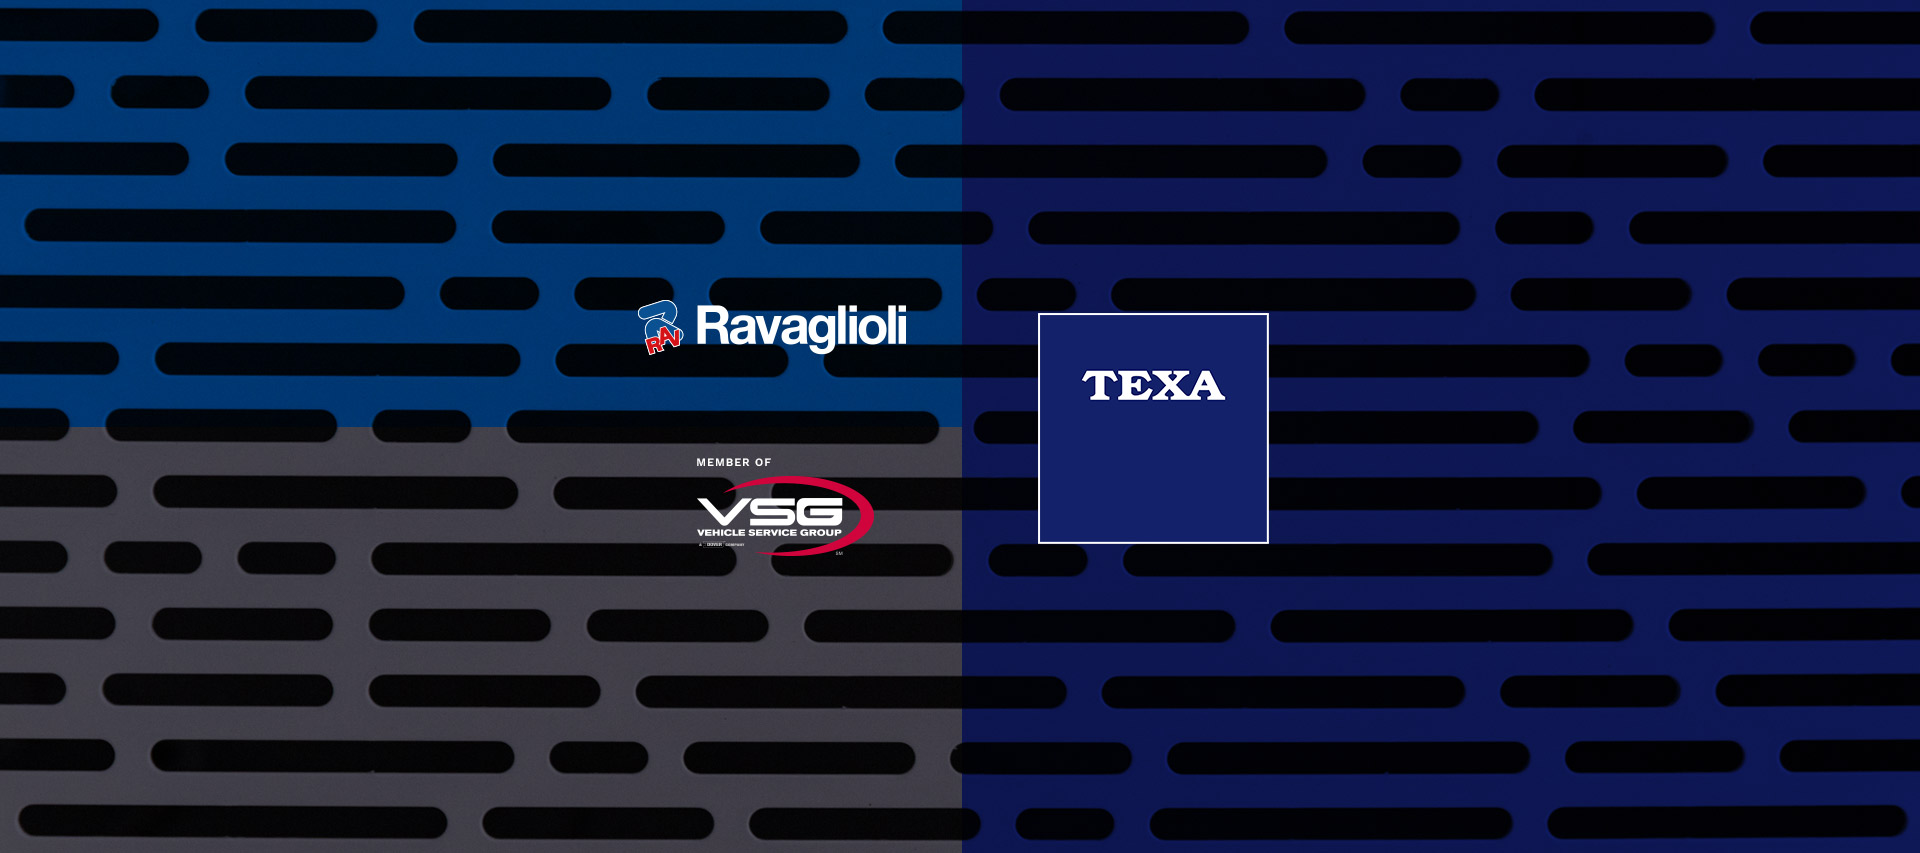 New alliance between Ravaglioli and TEXA